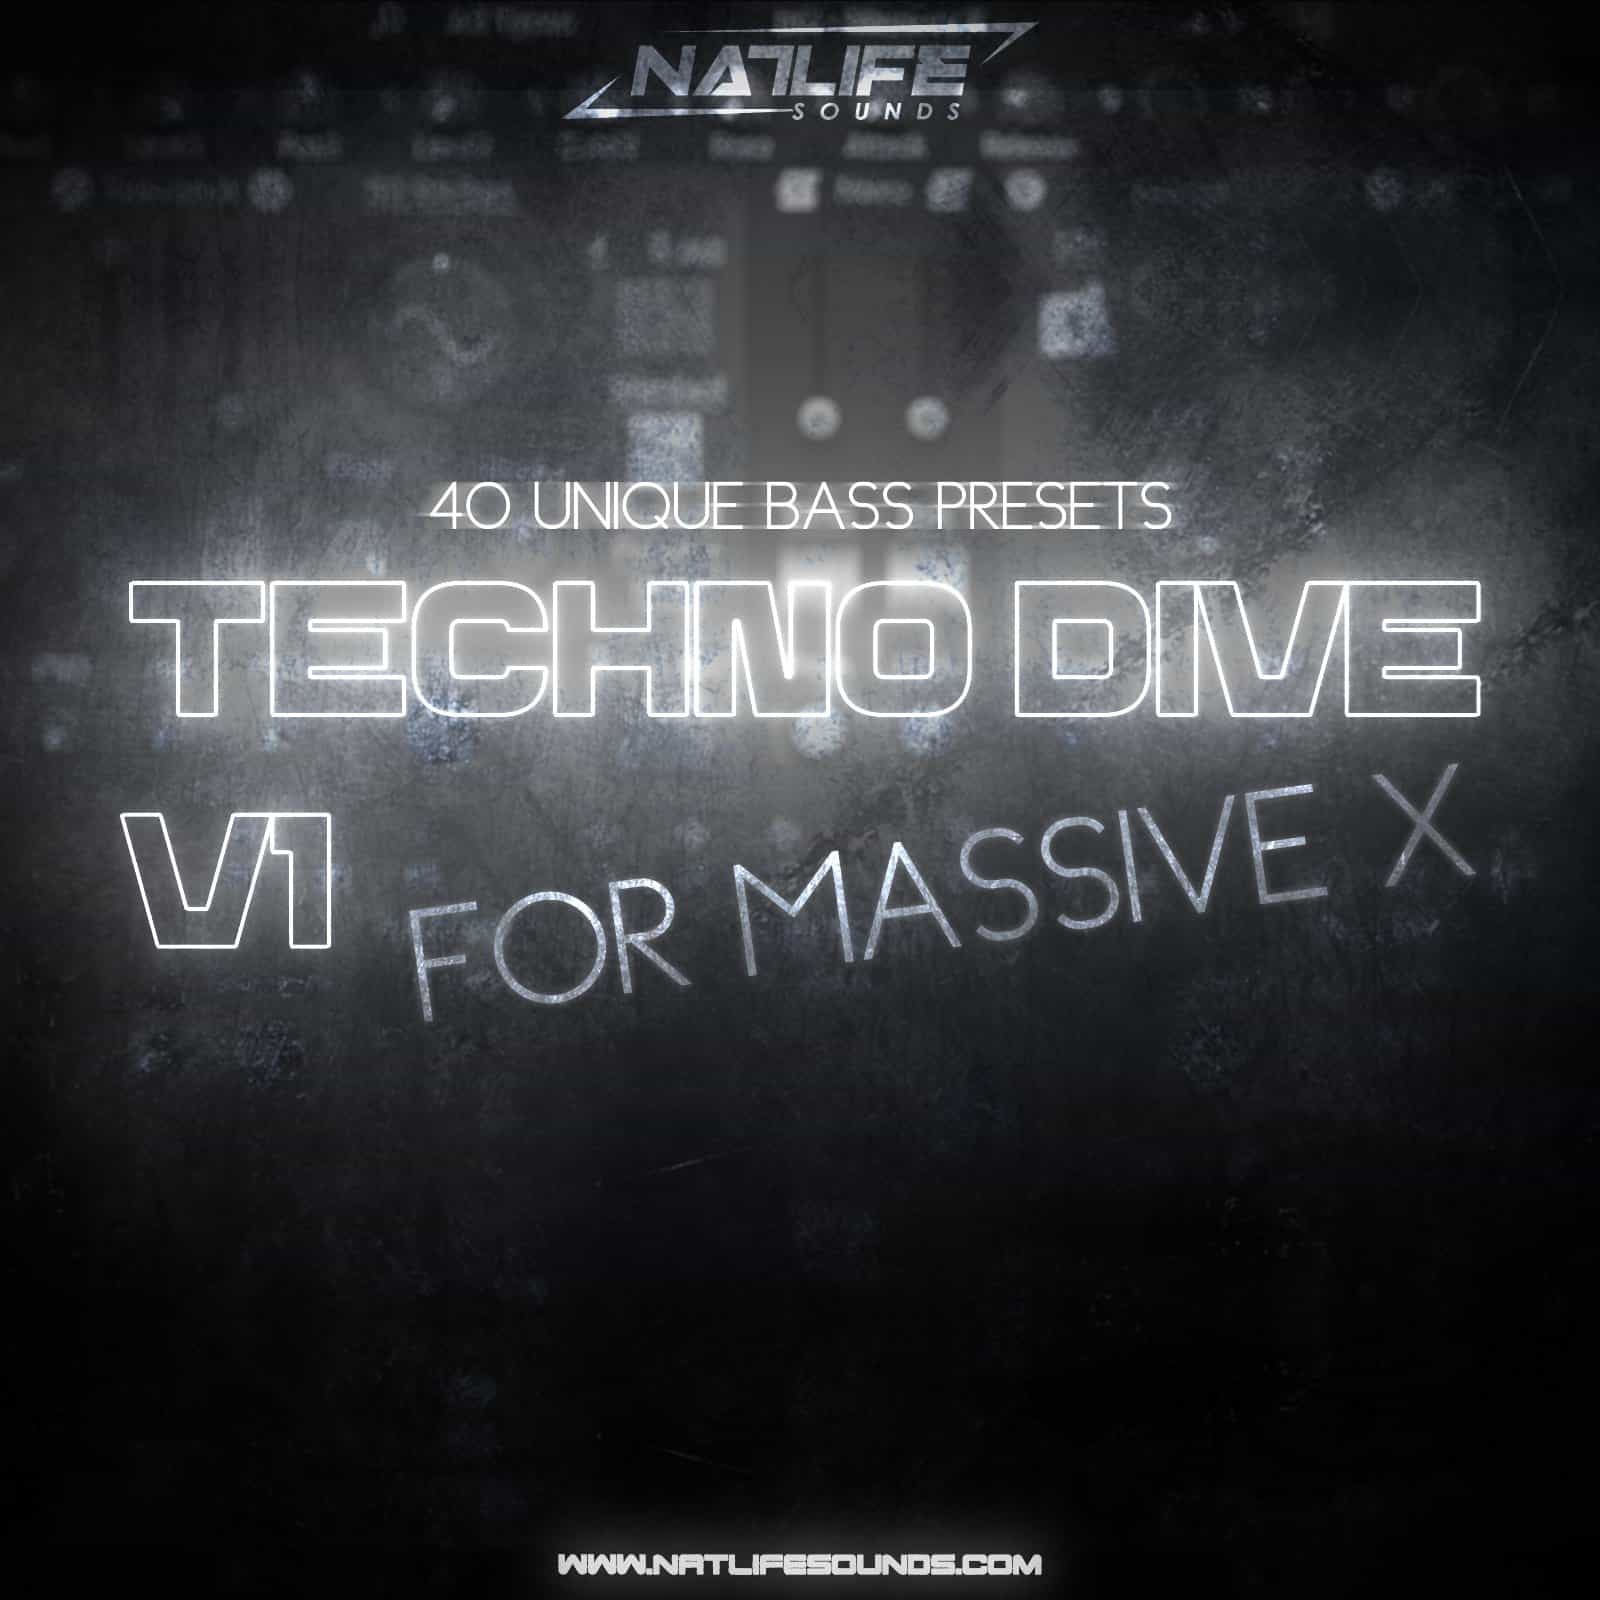 Techno Dive V1 for Massive X